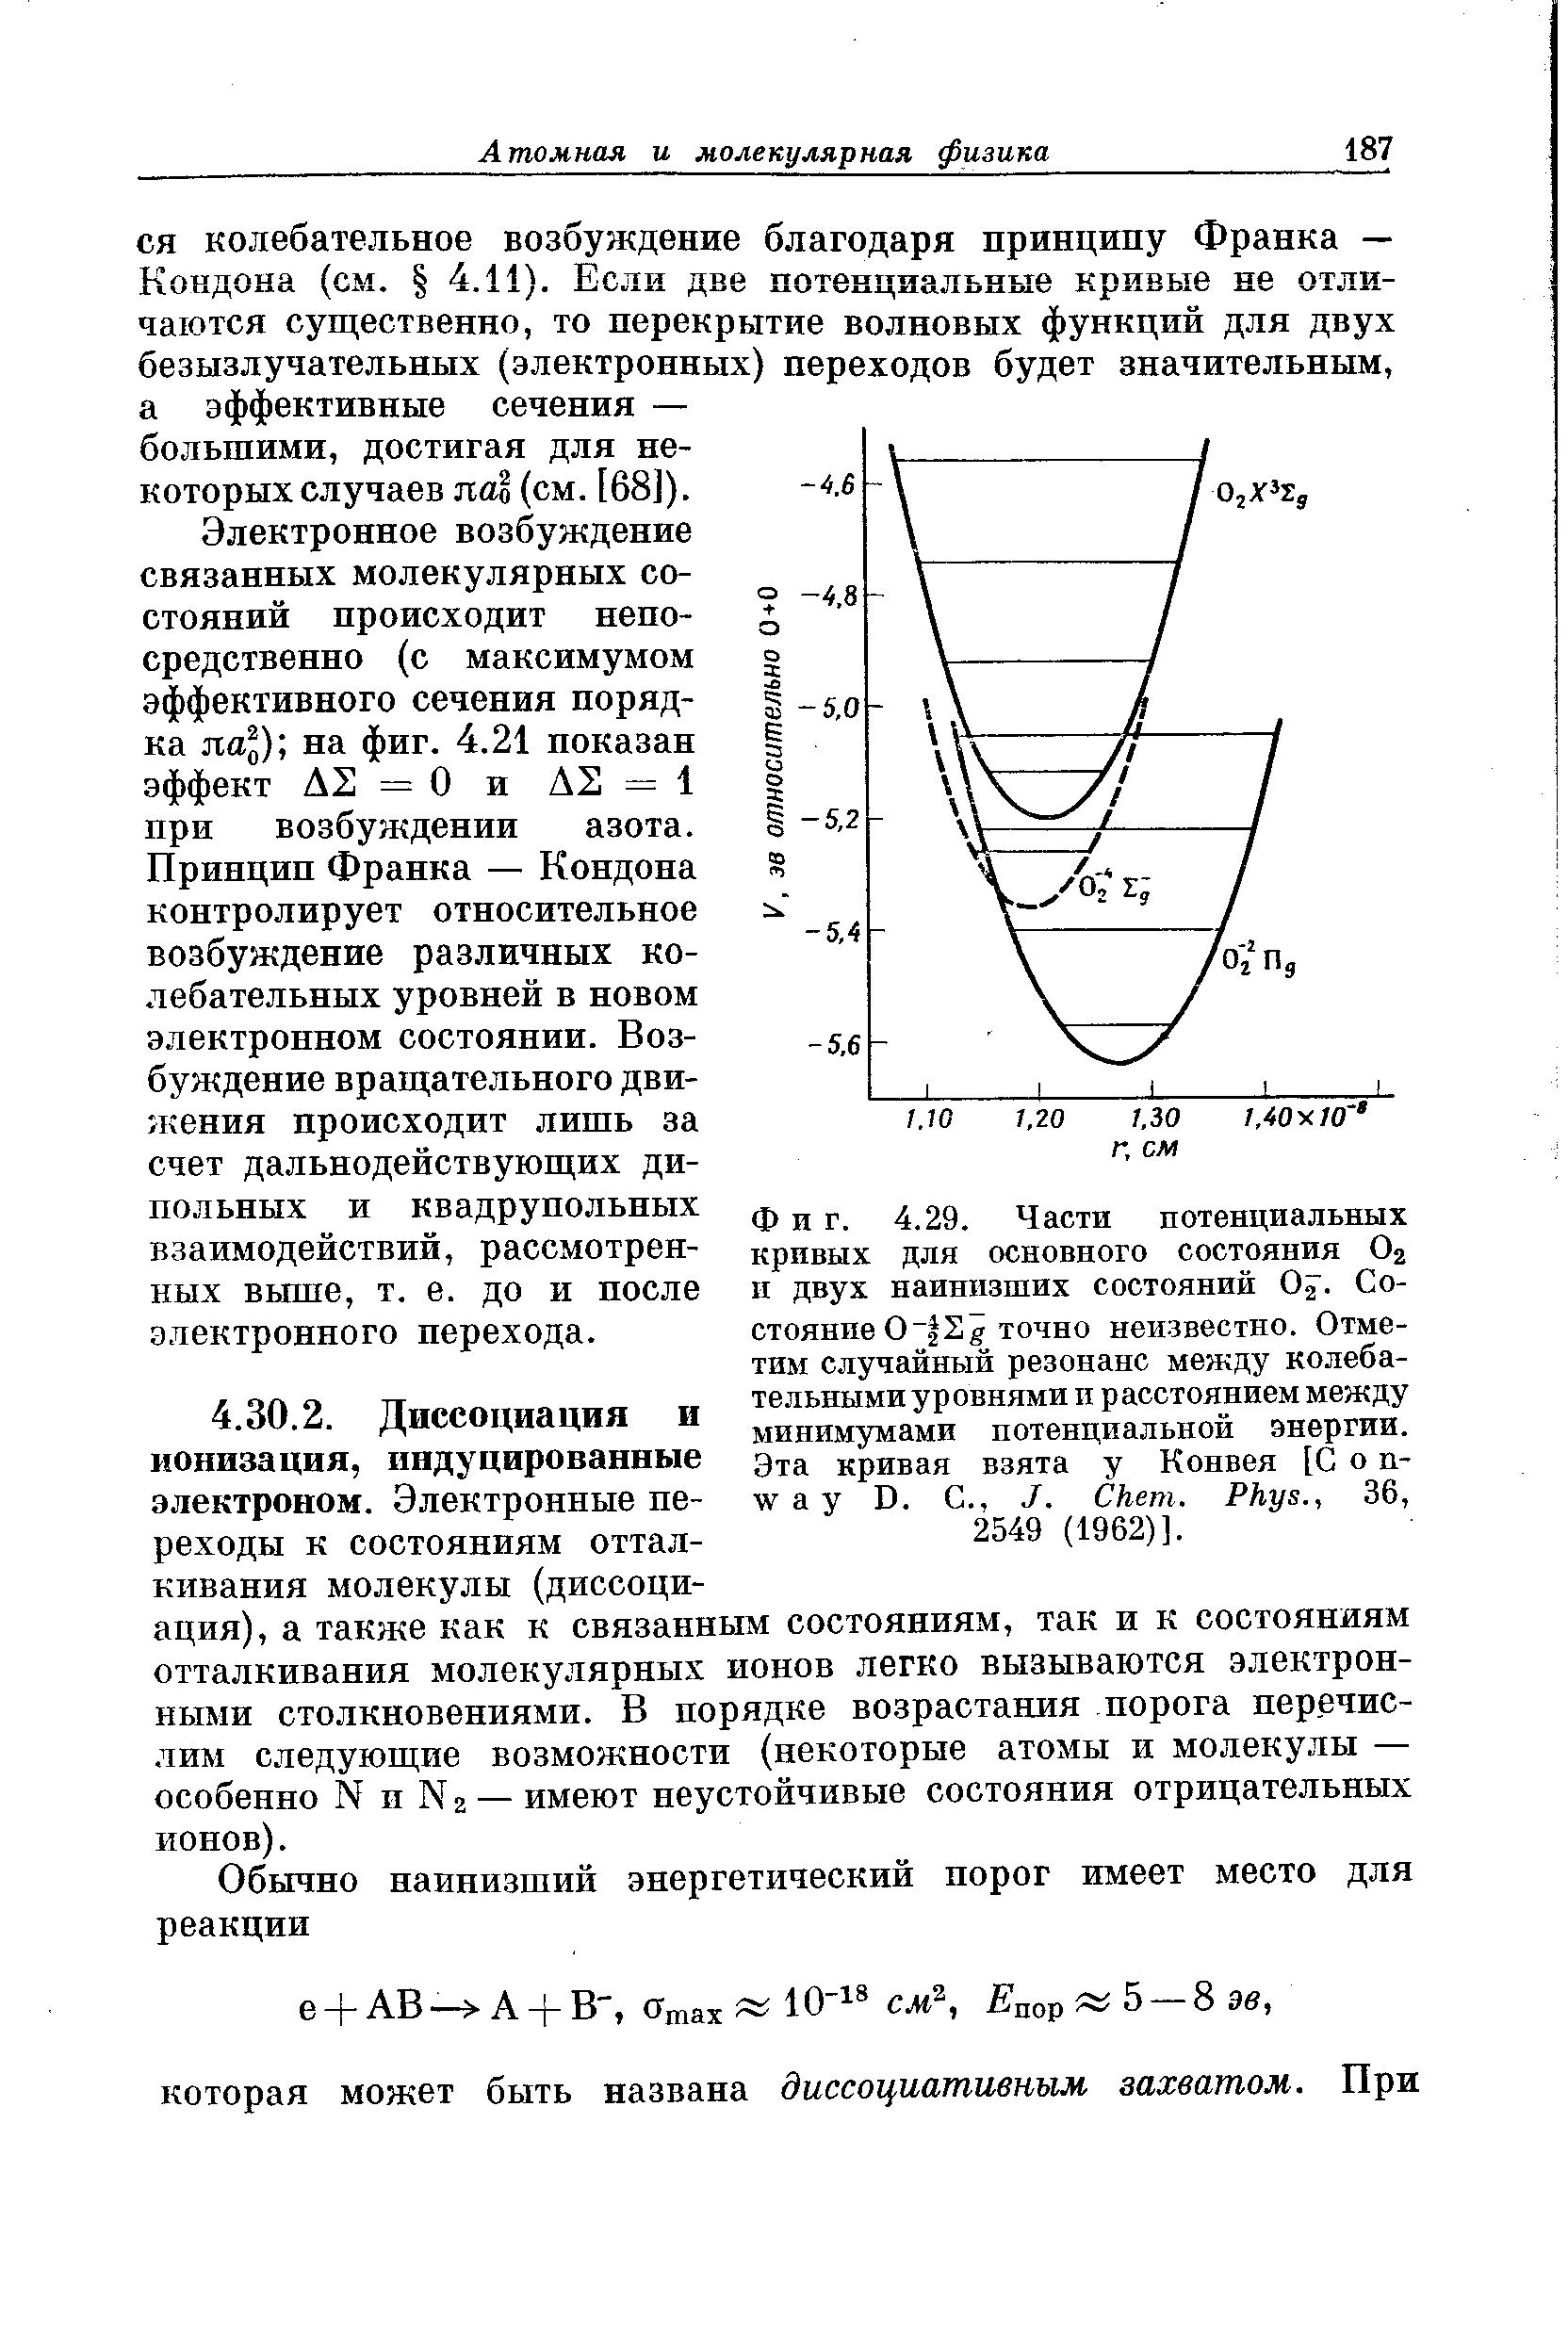 Фиг. 4.29. Части потенциальных кривых для основного состояния Ог и двух наинизших состояний О . Состояние О 2 g точно неизвестно. Отметим случайный резонанс между колебательными у р овнями п р асстоянием между минимумами потенциальной энергии. Эта кривая взята у Конвея [С о п-way D. С., J. hem. Phys., 36, 2549 (1962)].
